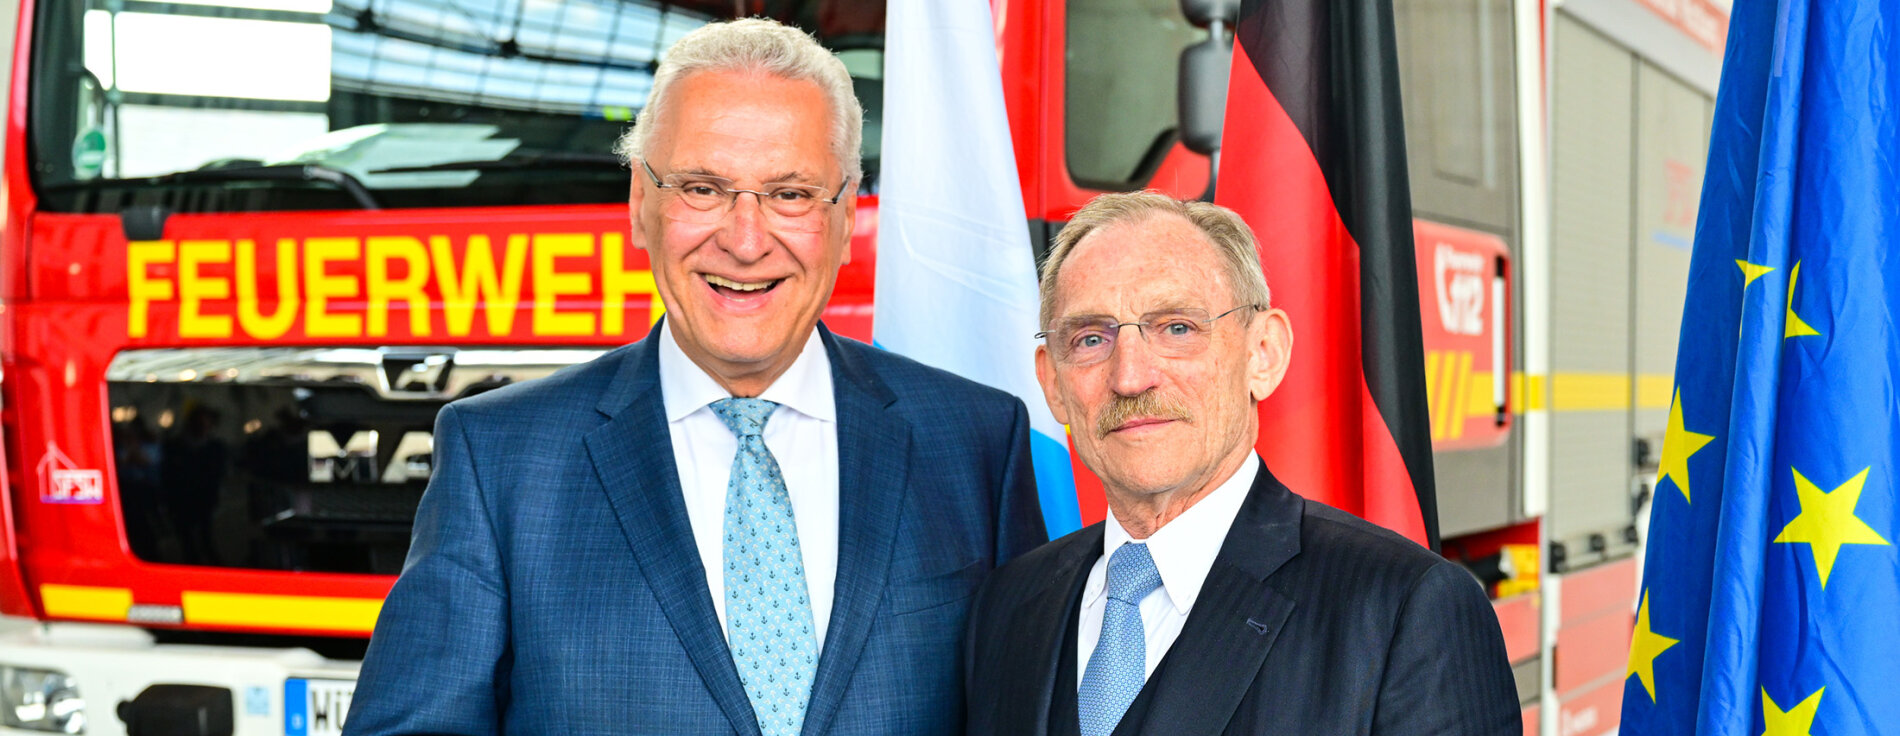 Innenminister Joachim Herrmann und ungarischer Innenminister Dr. Sándor Pintér vor Feuerwehrauto